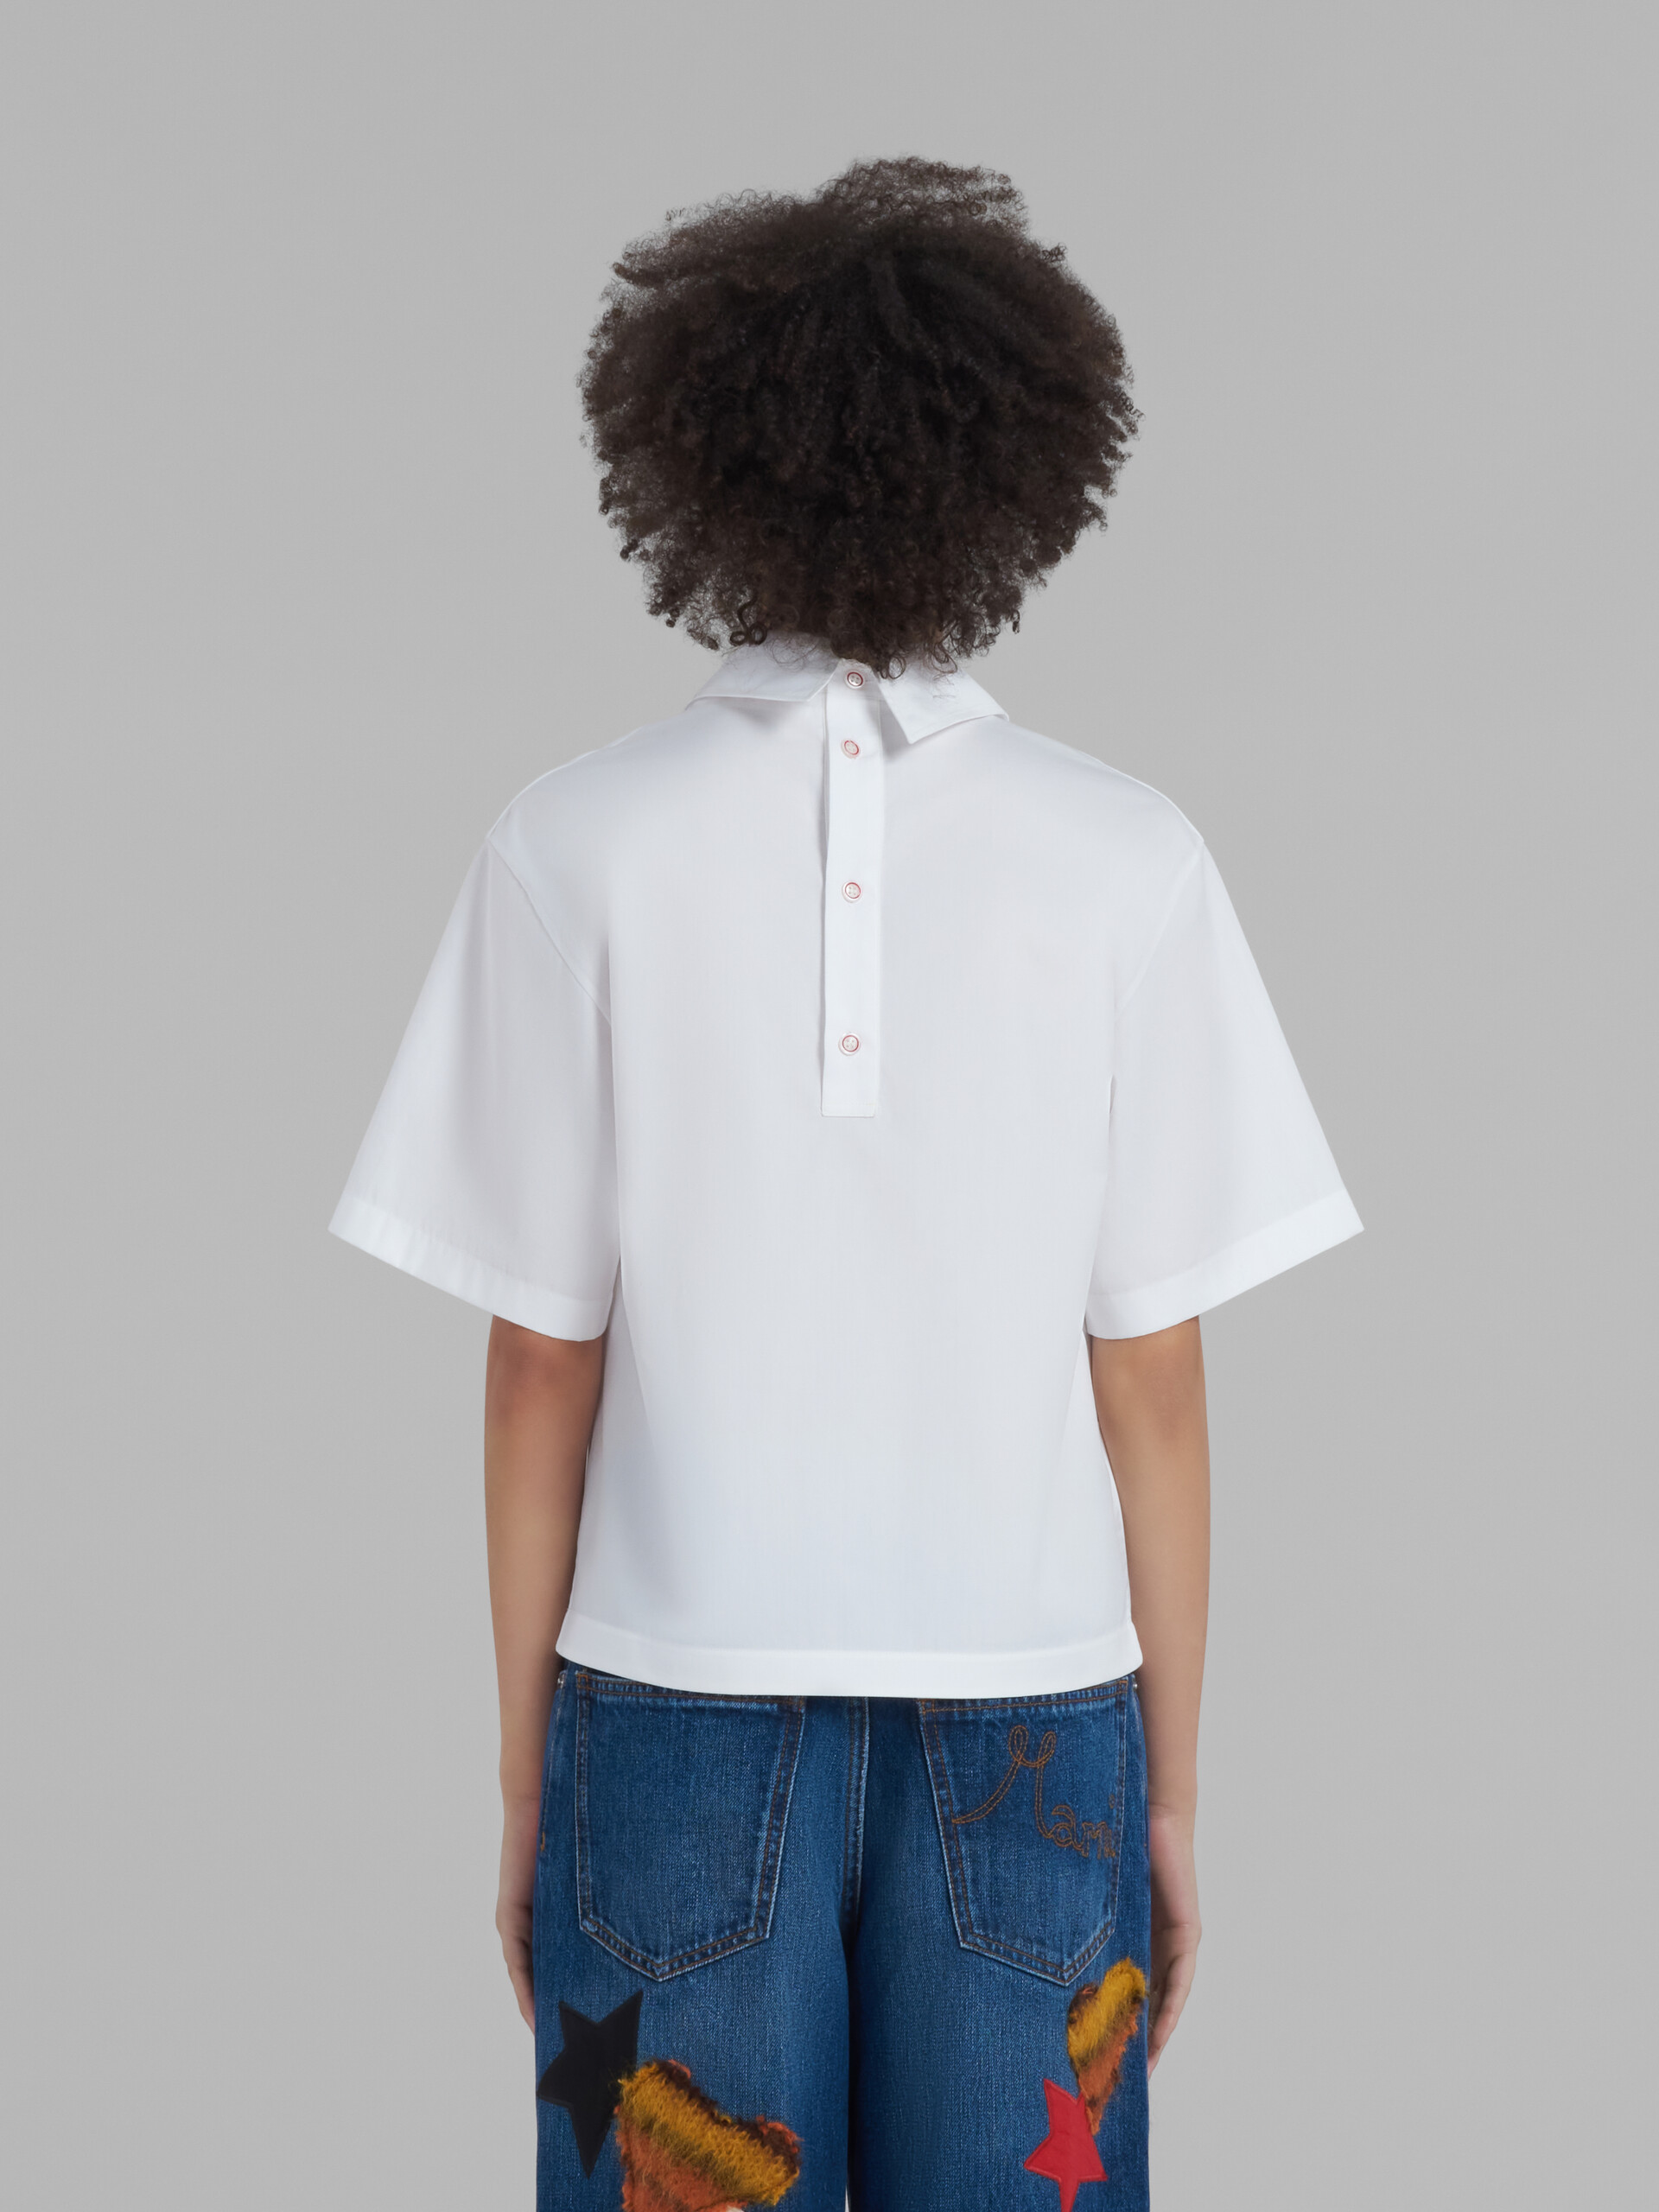 Blusa blanca de popelina ecológica con parte trasera estilo polo - Camisas - Image 3